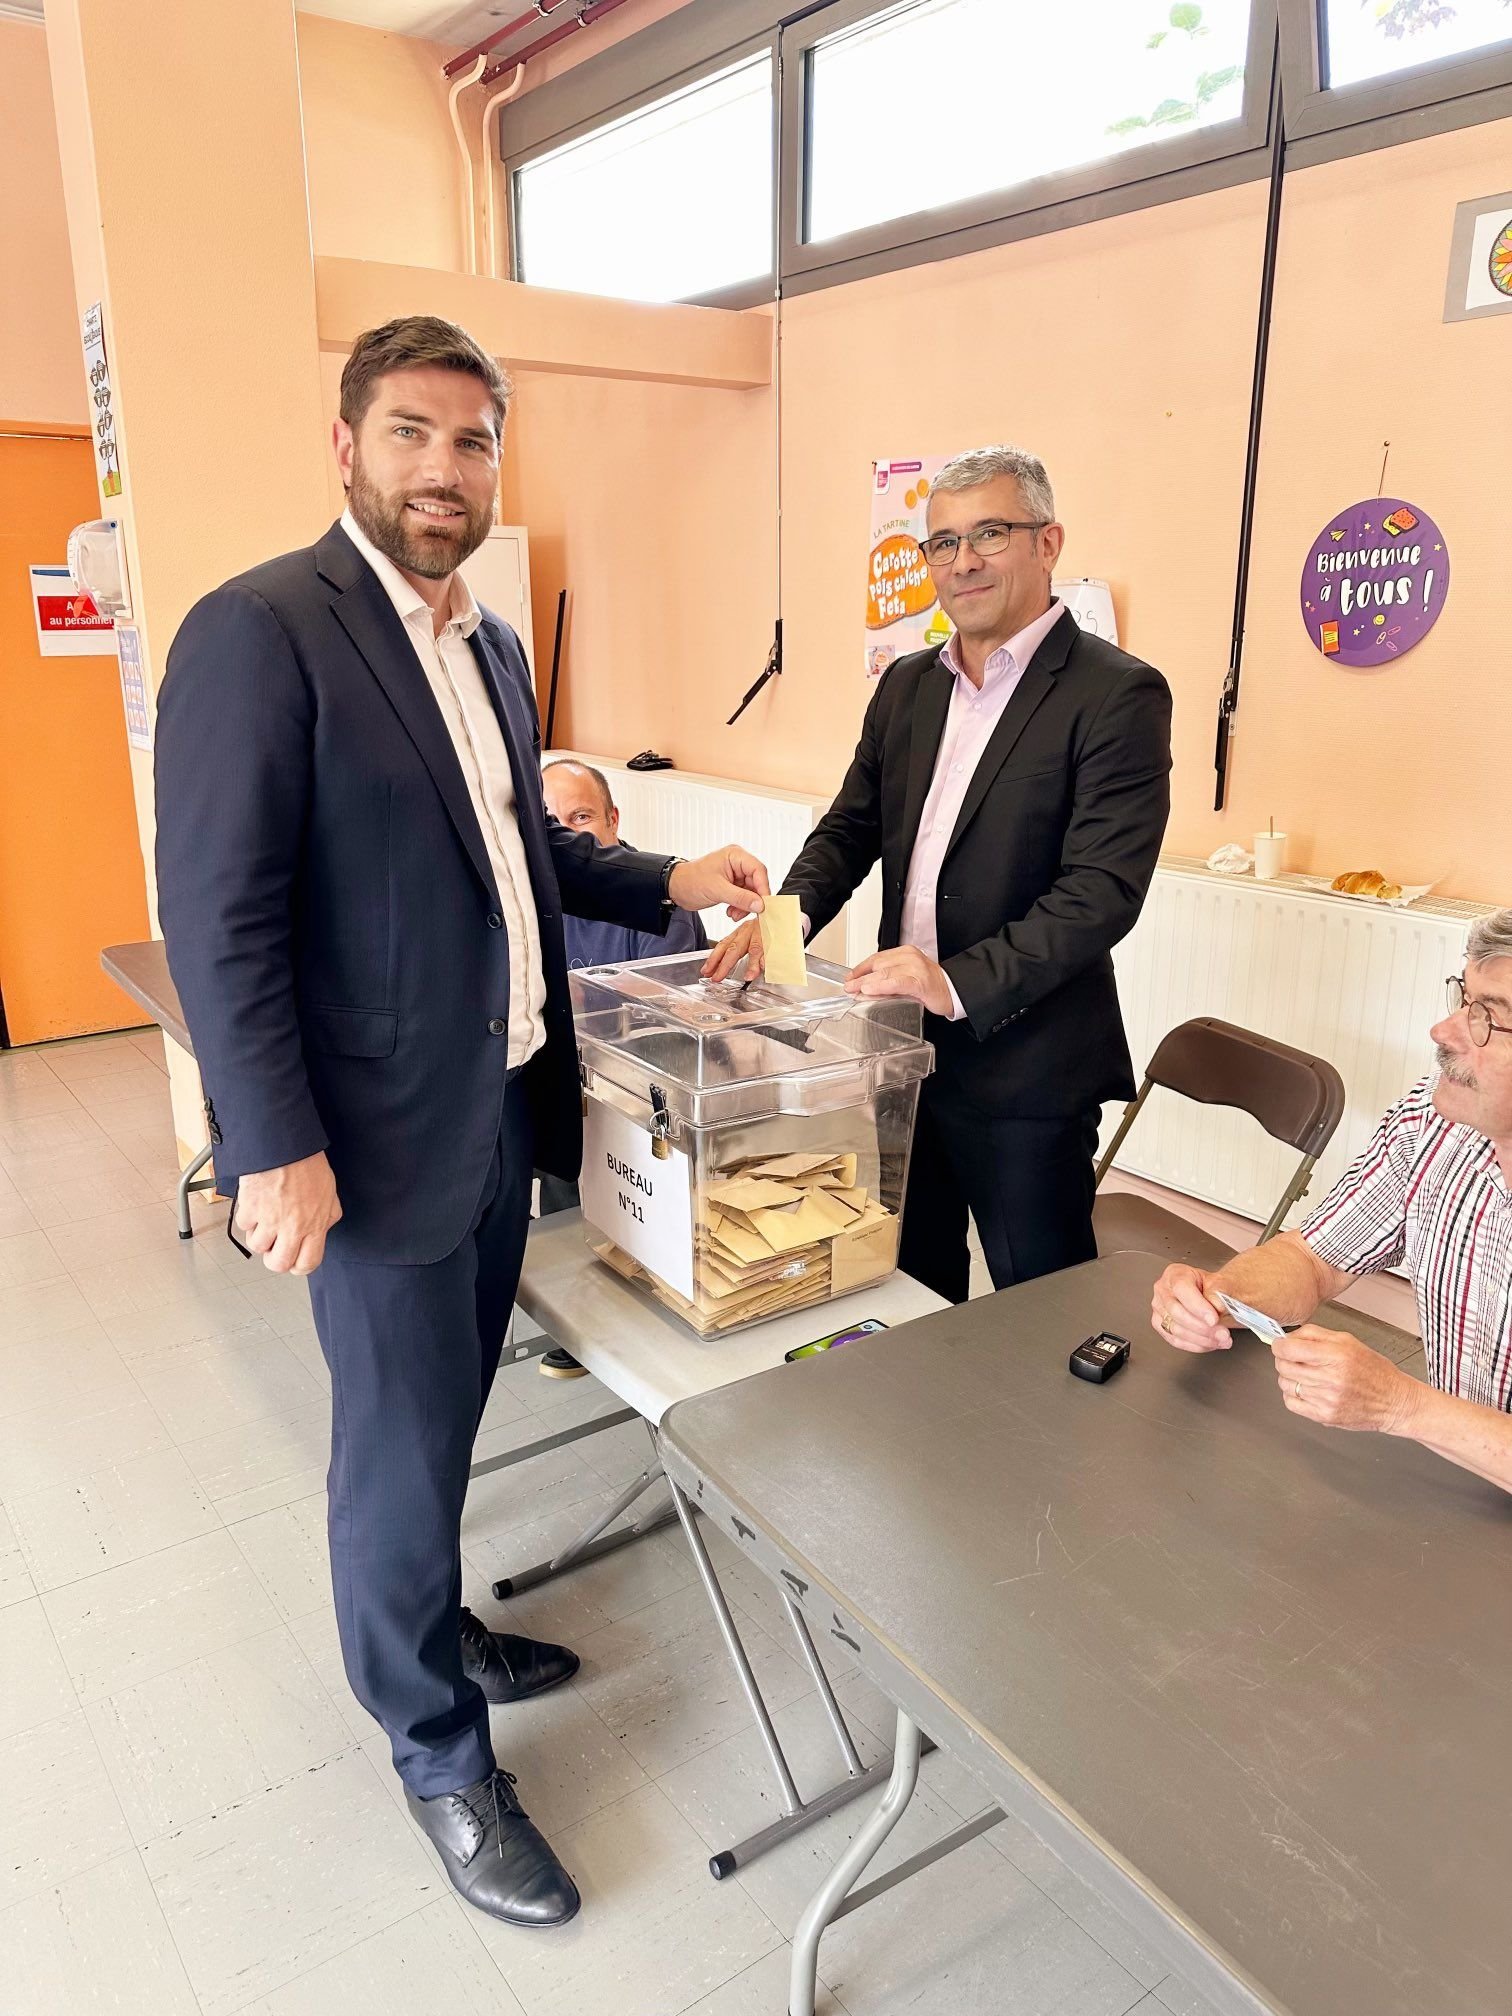 L'Haÿ-les-Roses, le 9 juin. Vincent Jeanbrun (LR), maire de la commune, a annoncé partir en campagne pour les législatives anticipées. Twitter